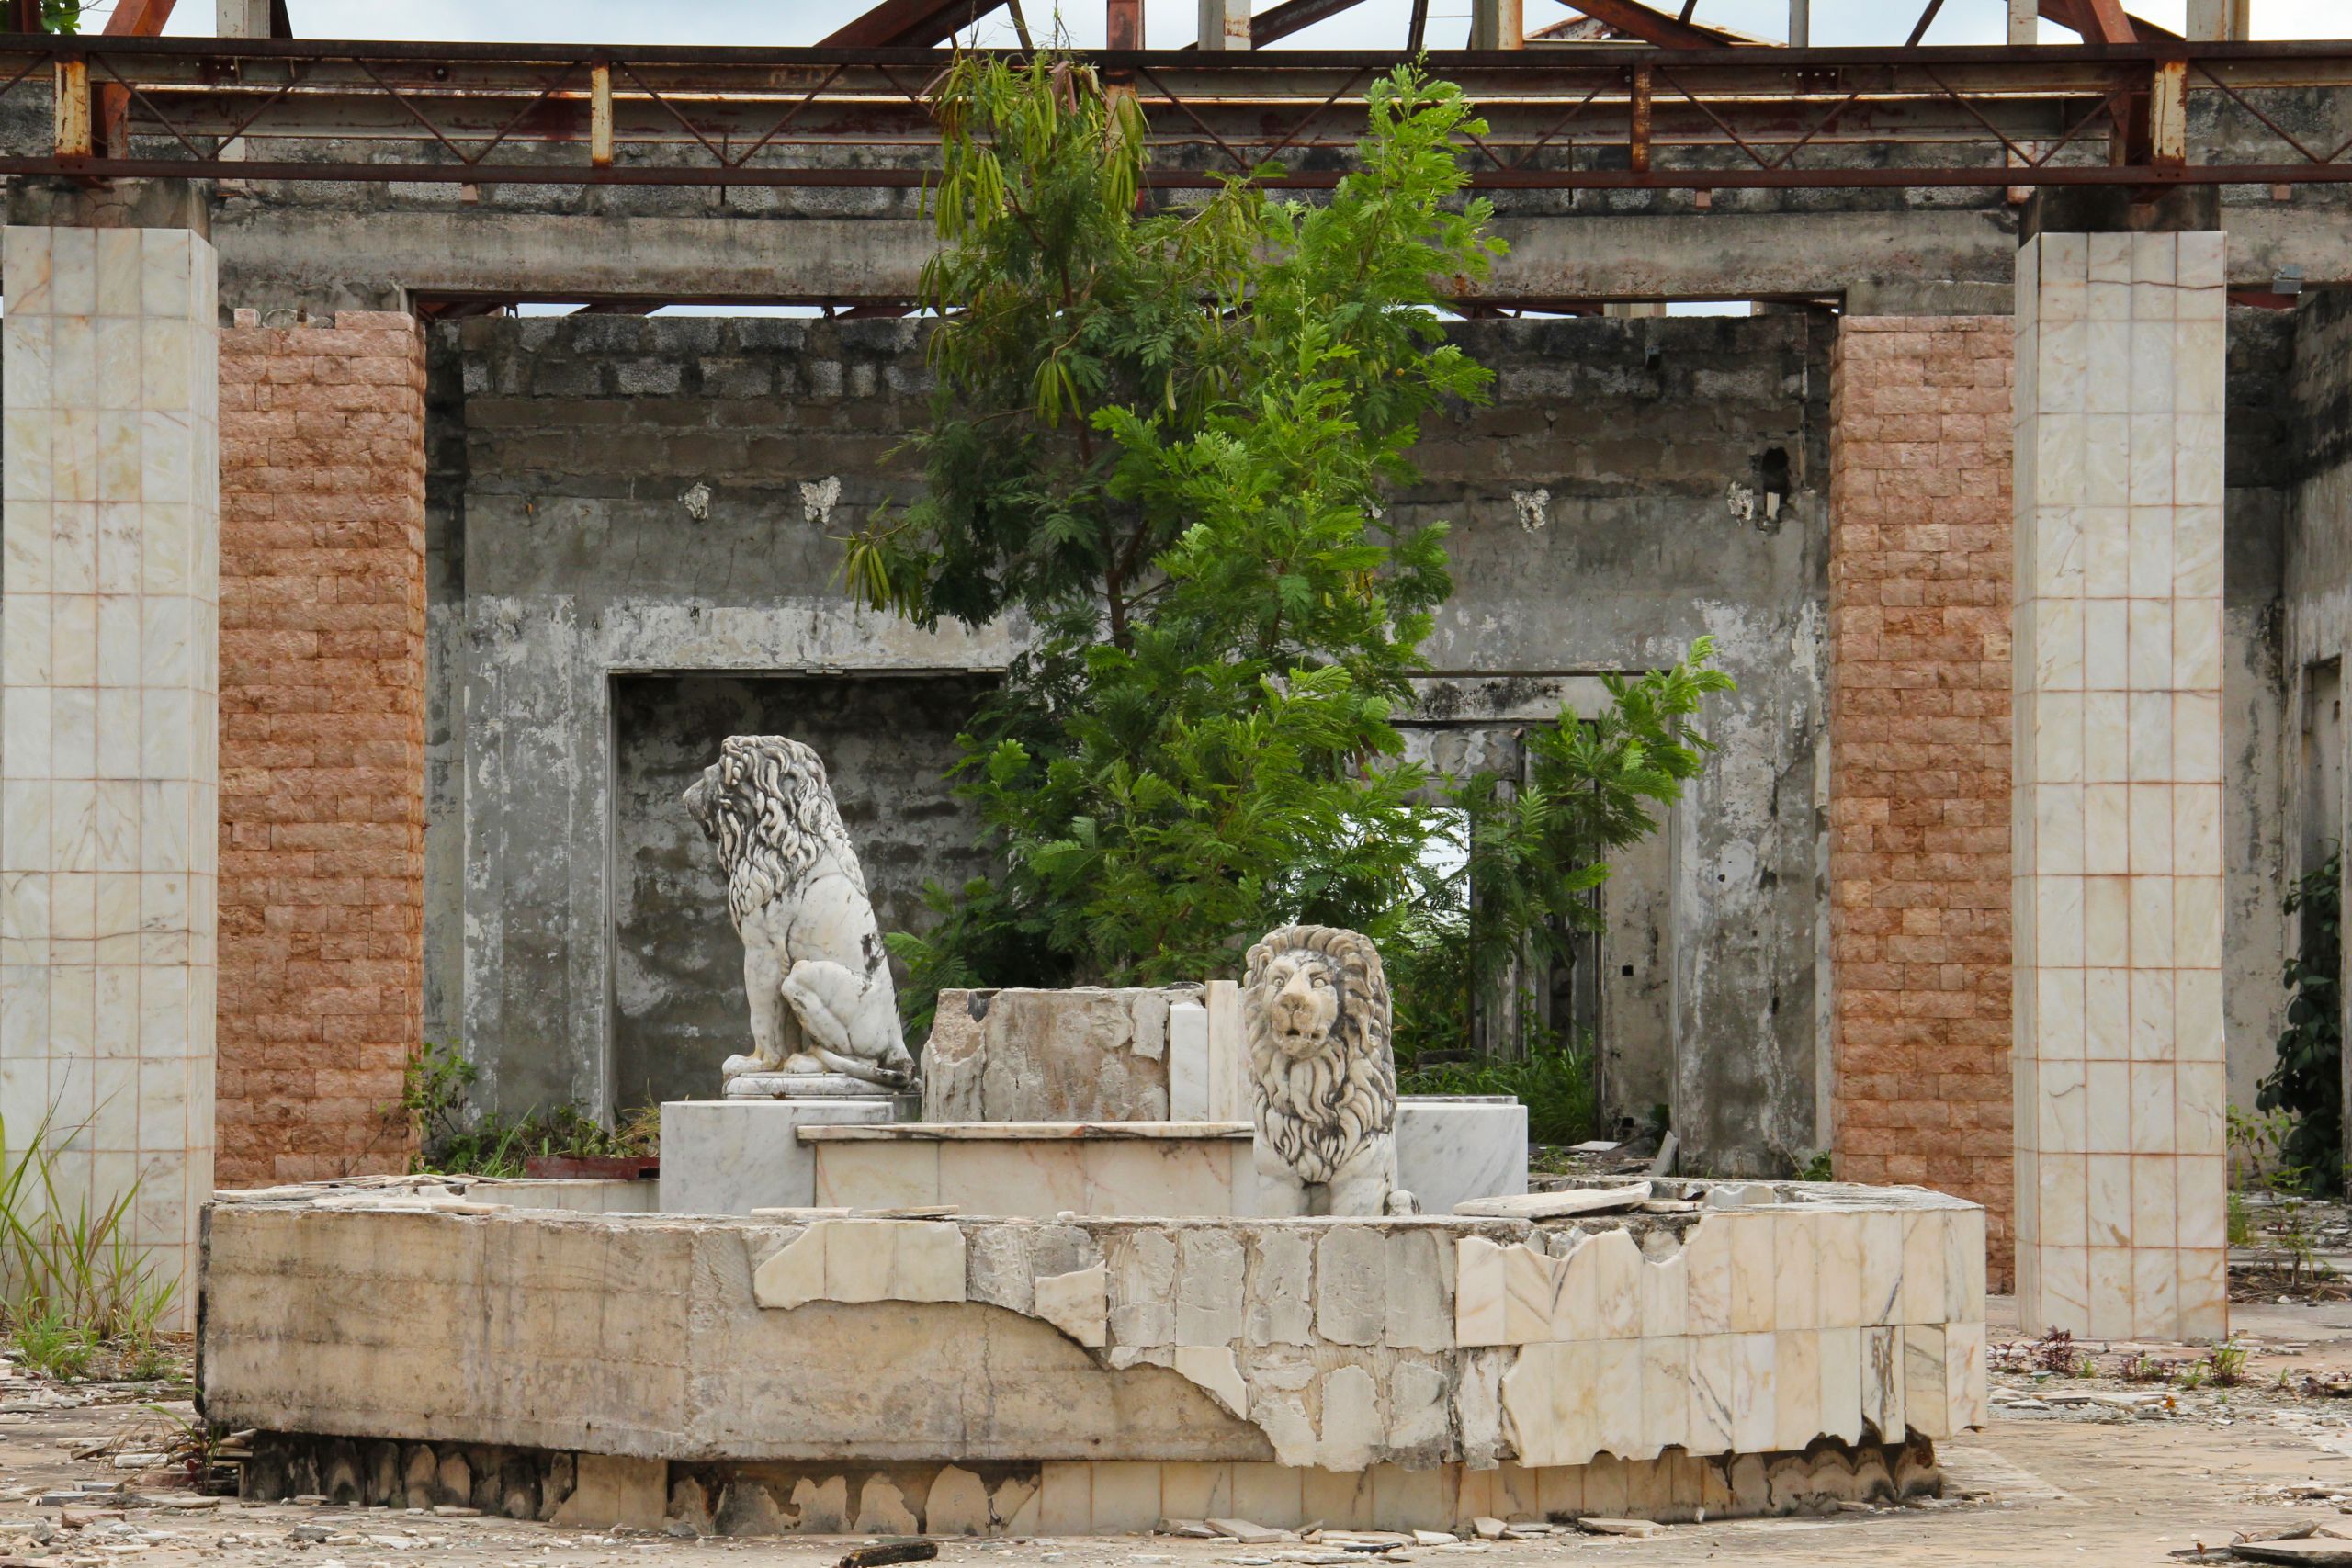  Abandoned palace